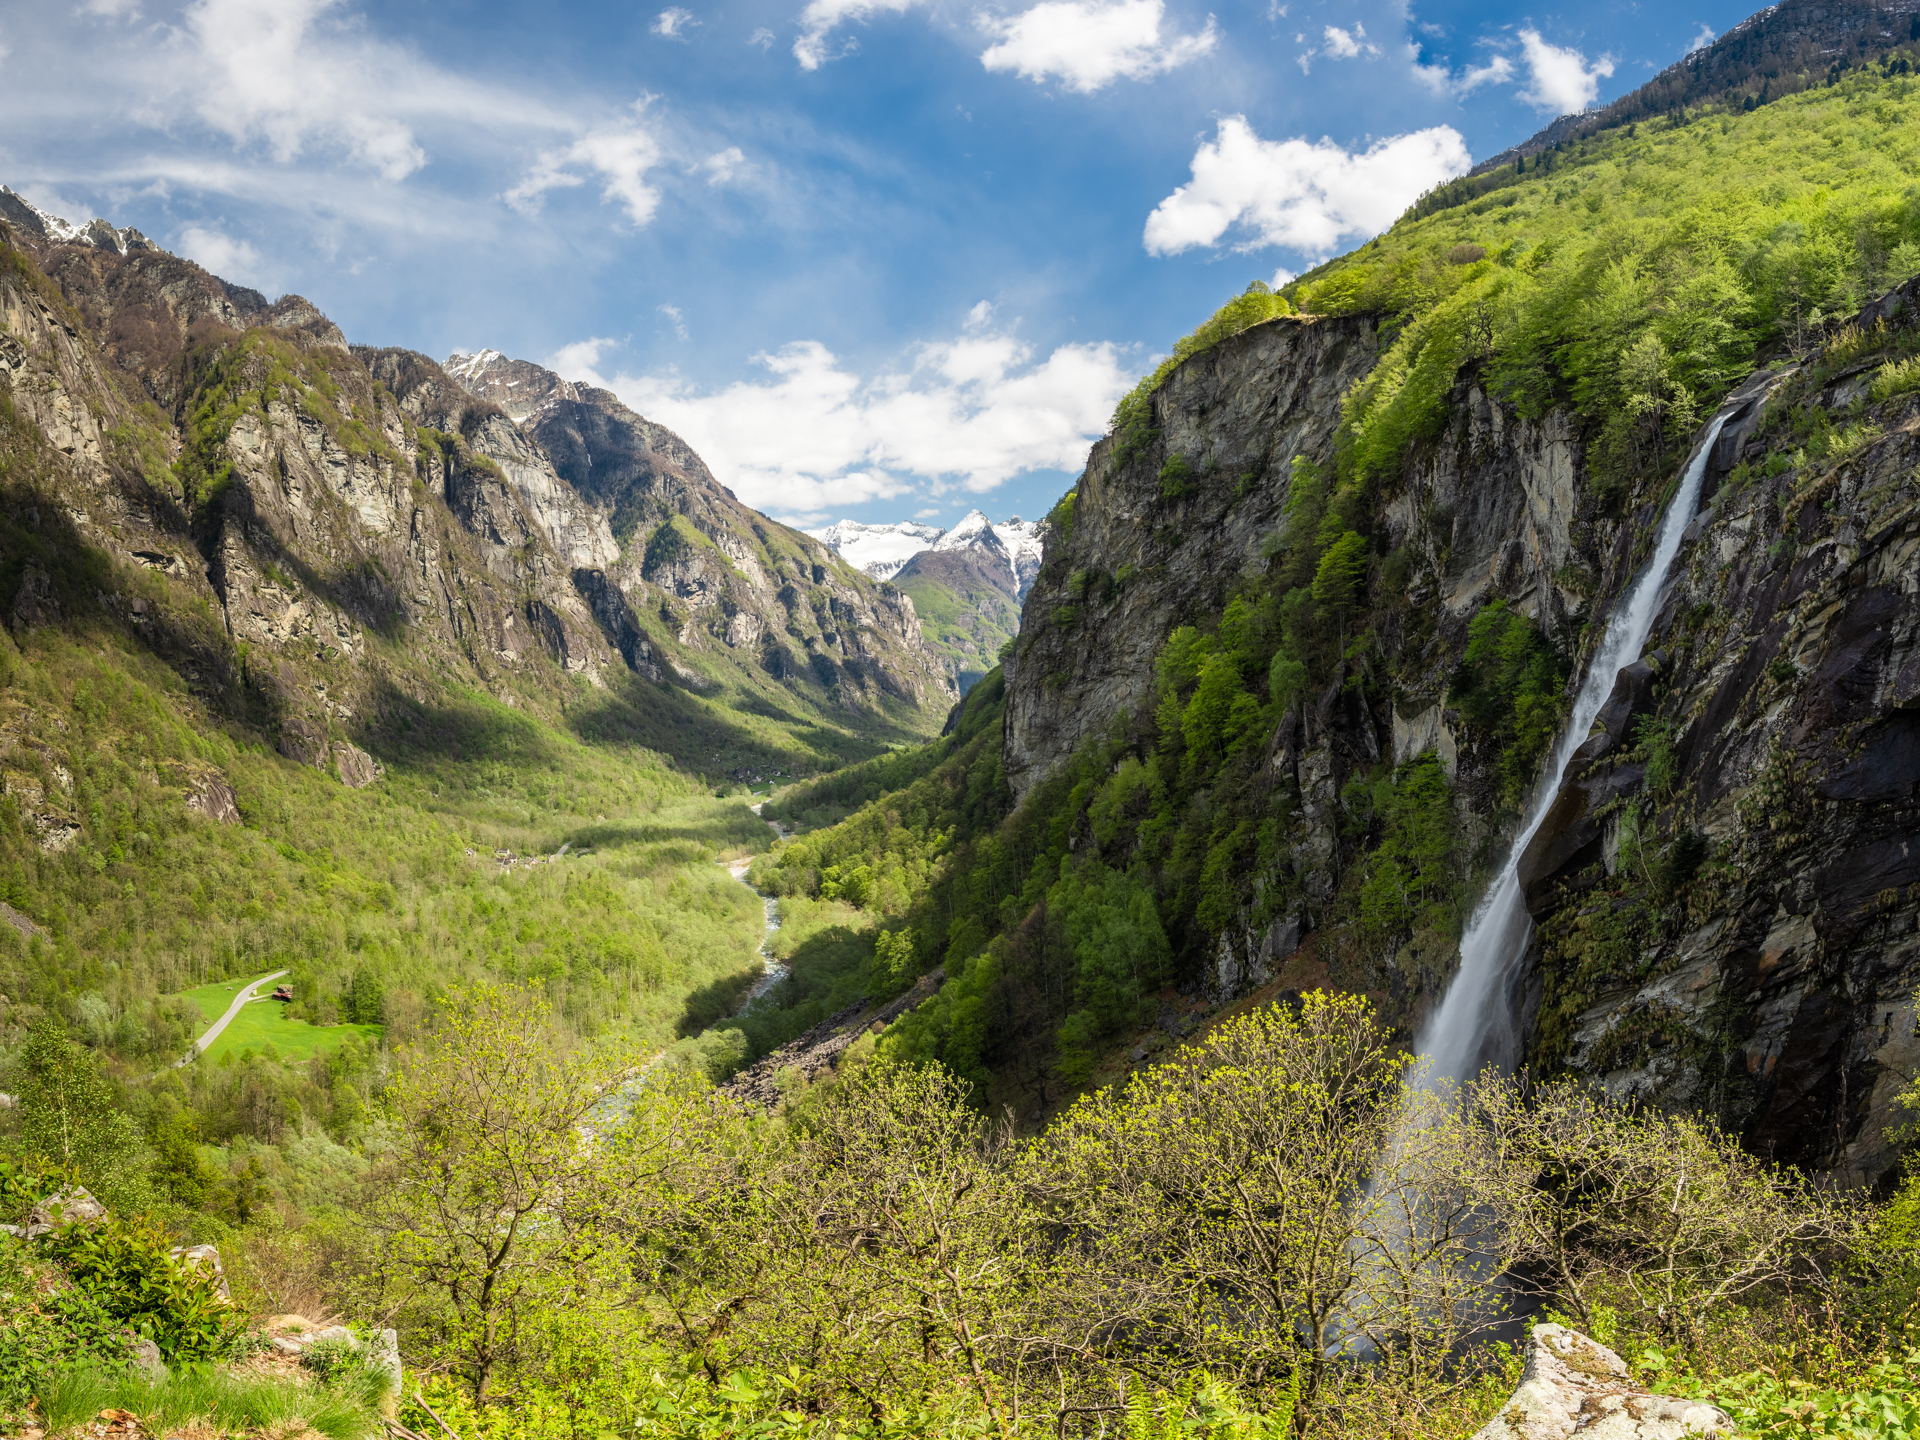 Một thác nước nhìn từ thung lũng. (Ảnh: Đăng dưới sự cho phép của Sylvia Michel Photography)